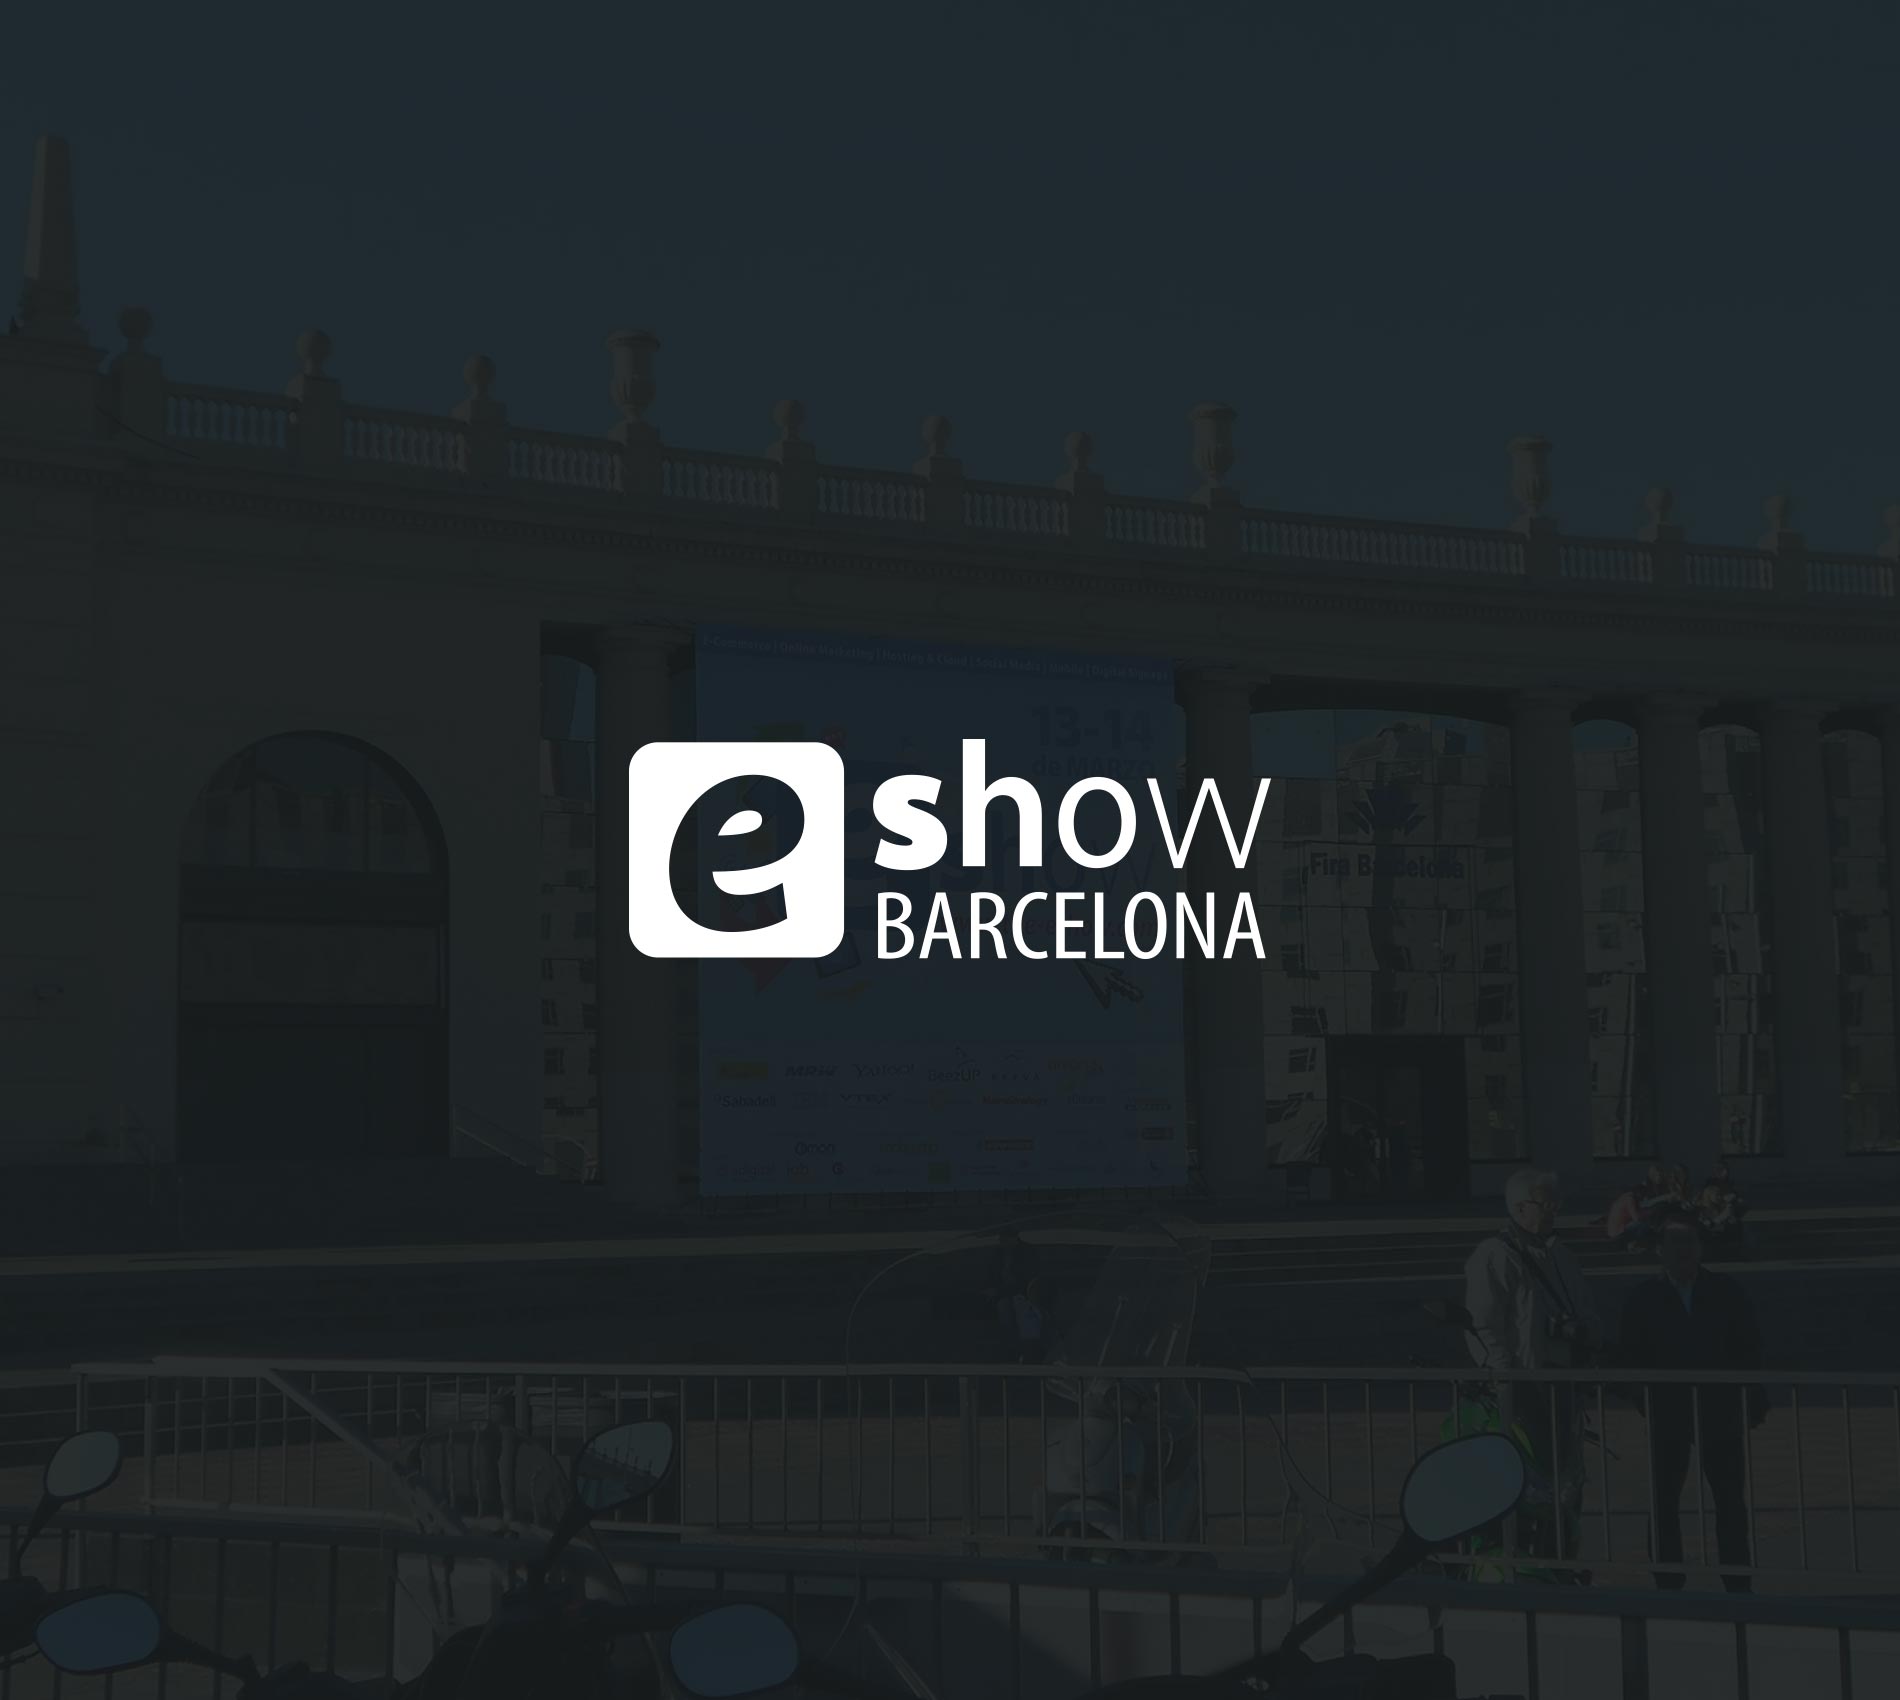 E-show 2013, Barcelona | March 2013